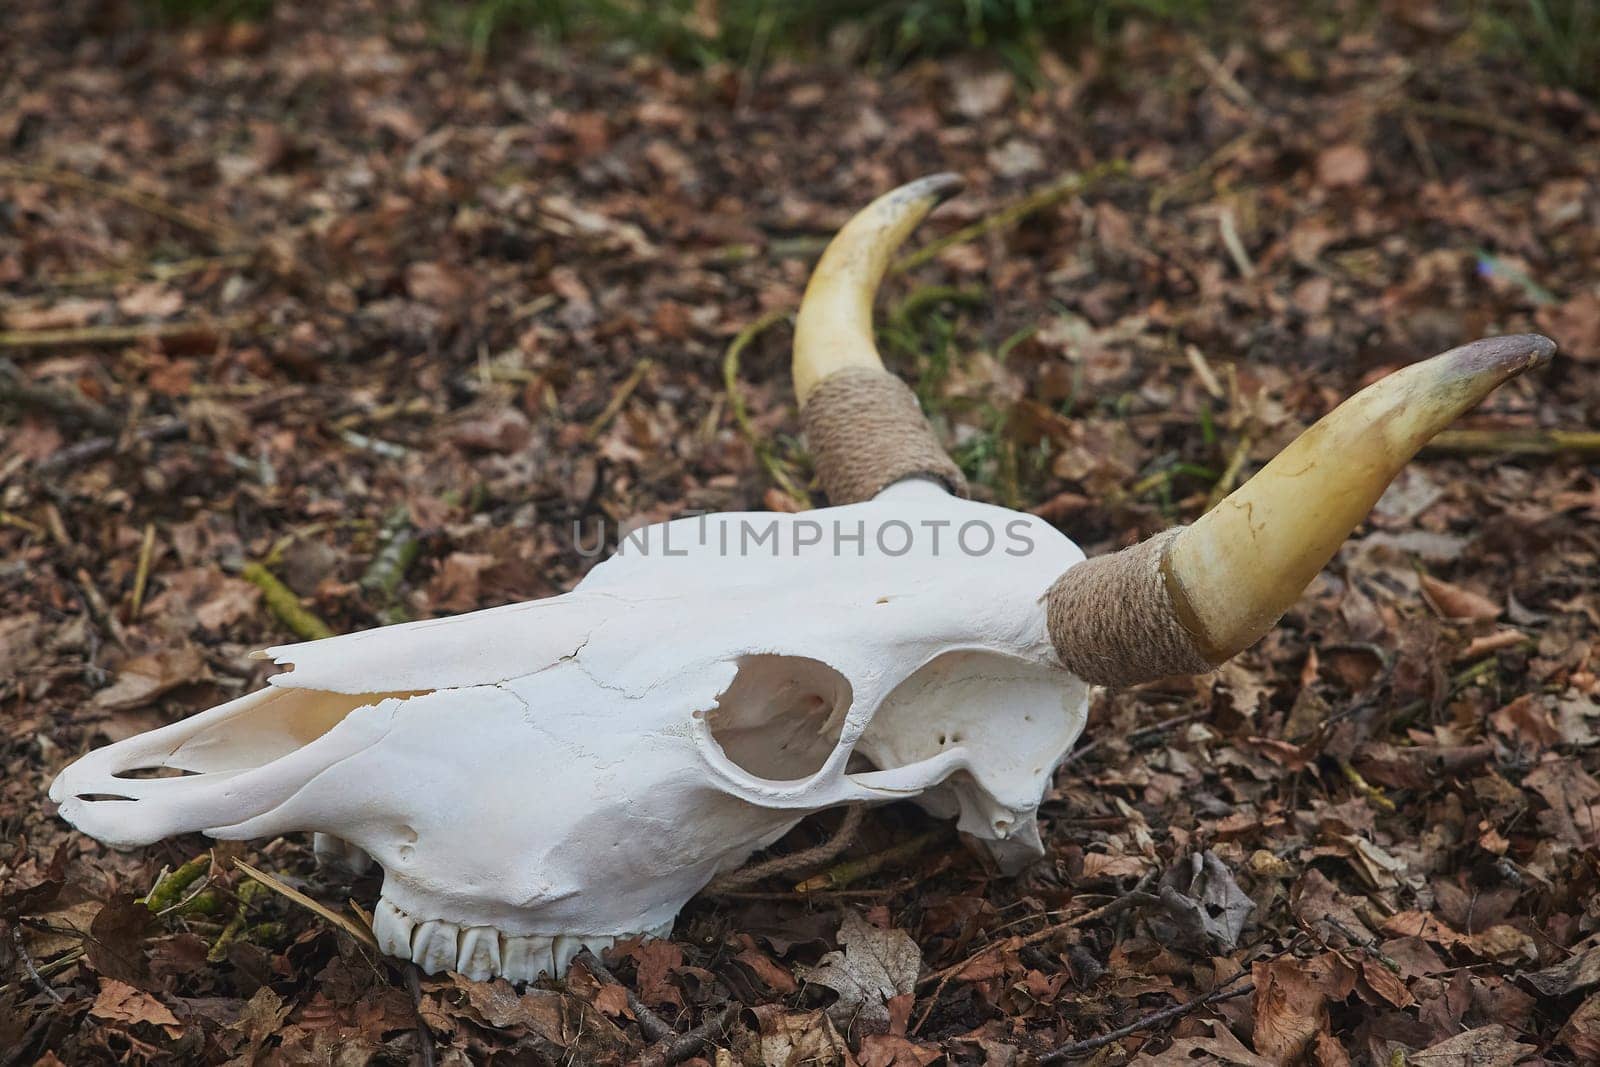 Huge bull skull in the autumn forest.